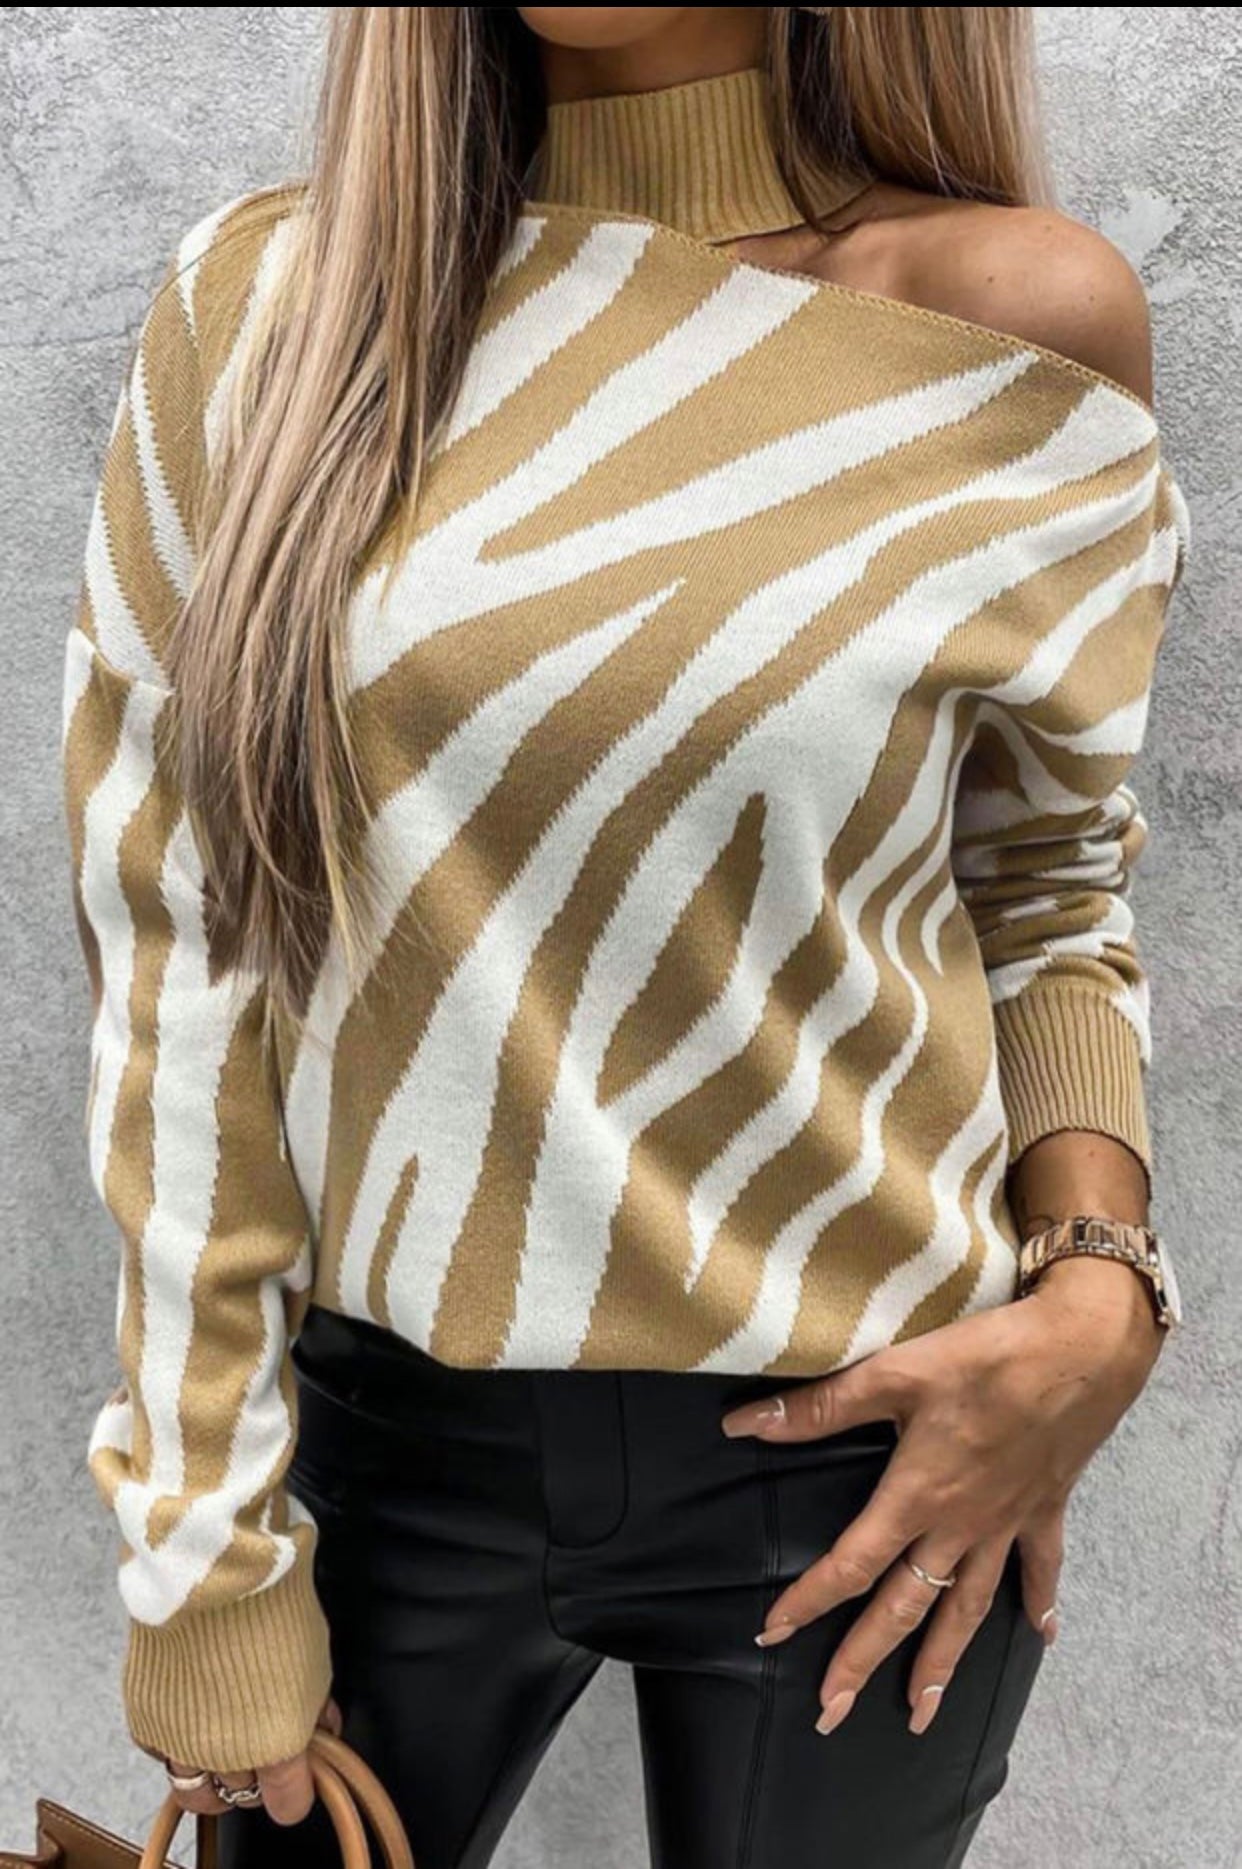 Zebra Sweater Cold Shoulder